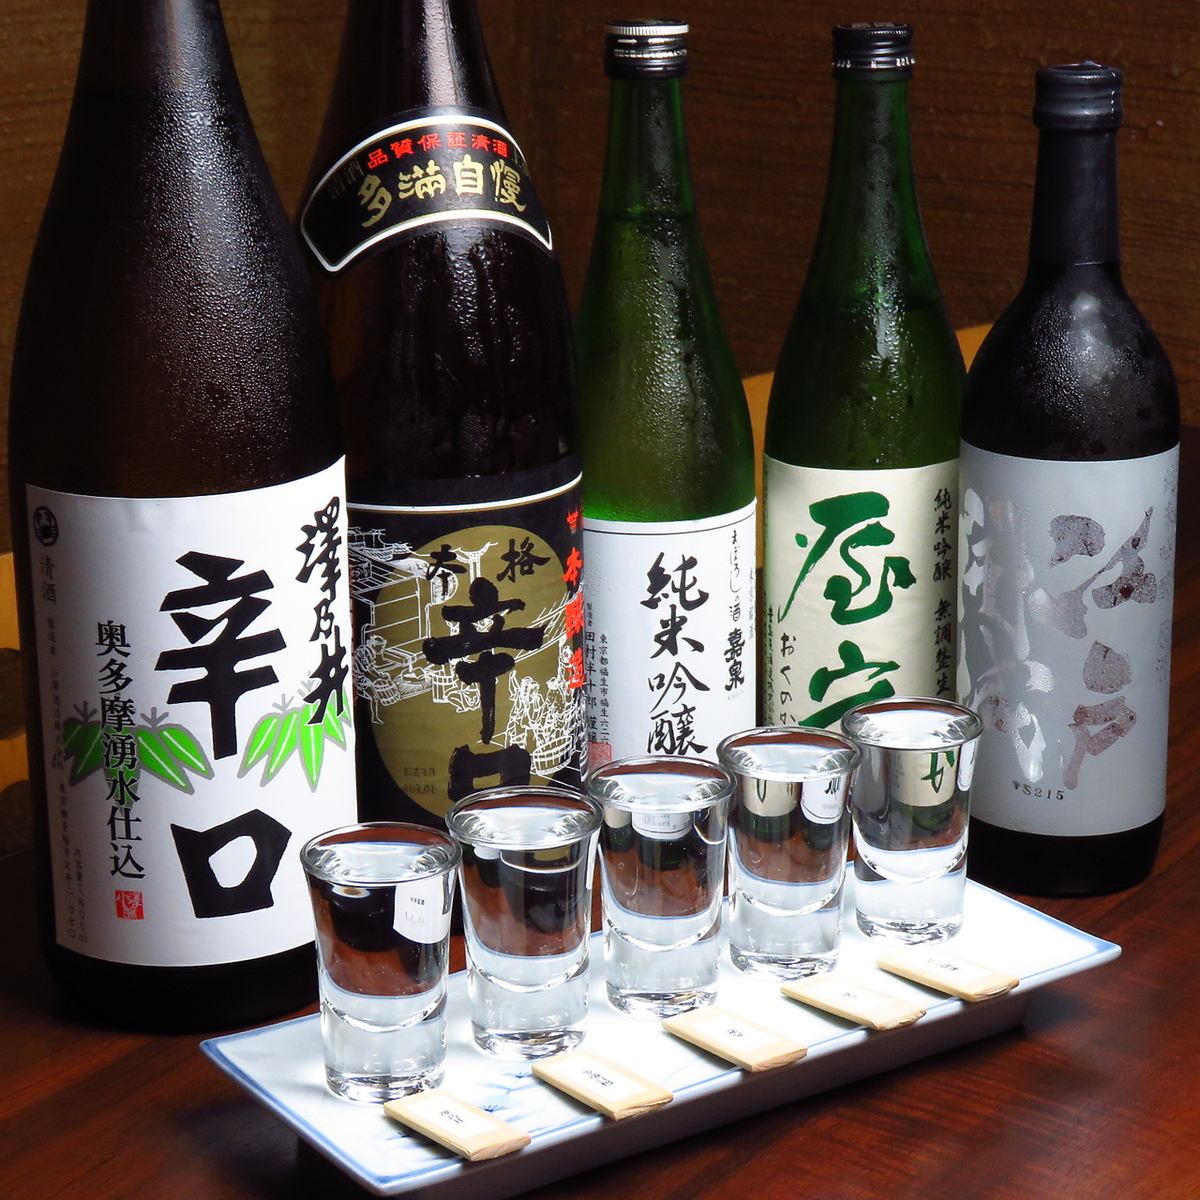 我們推荐一套您可以比較和飲用東京清酒的套餐。